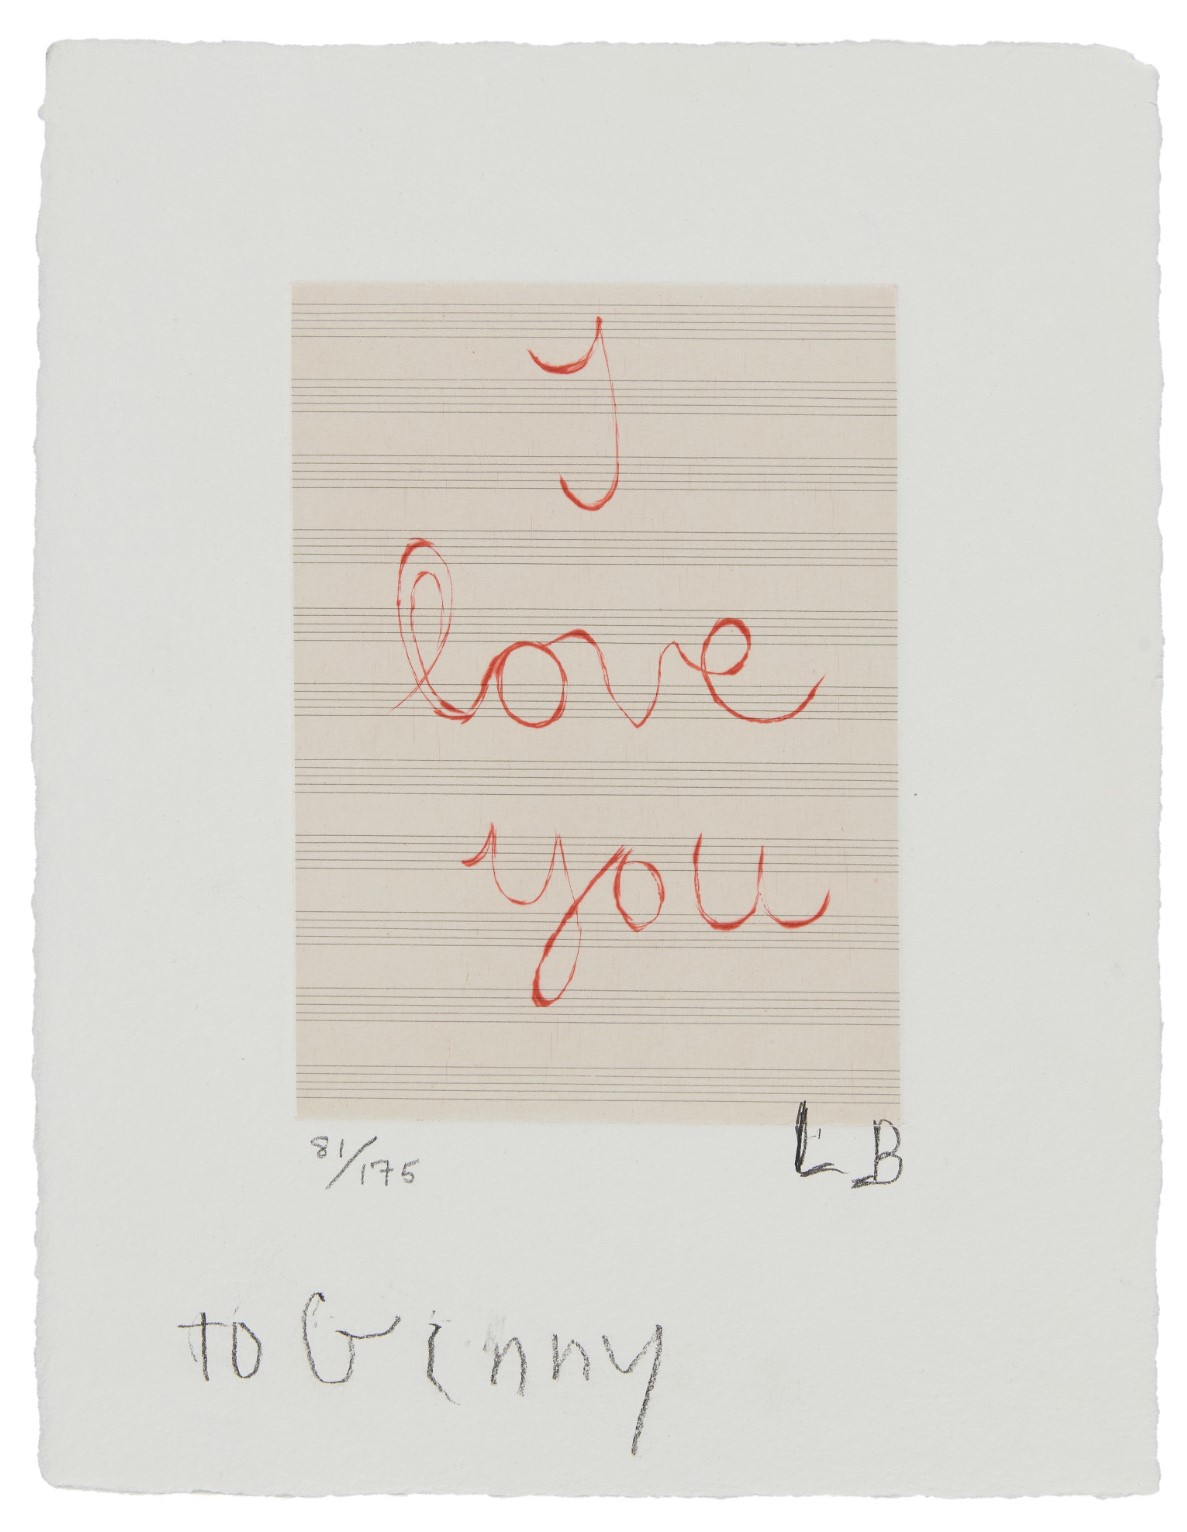 I Love You (MOMA 1139)